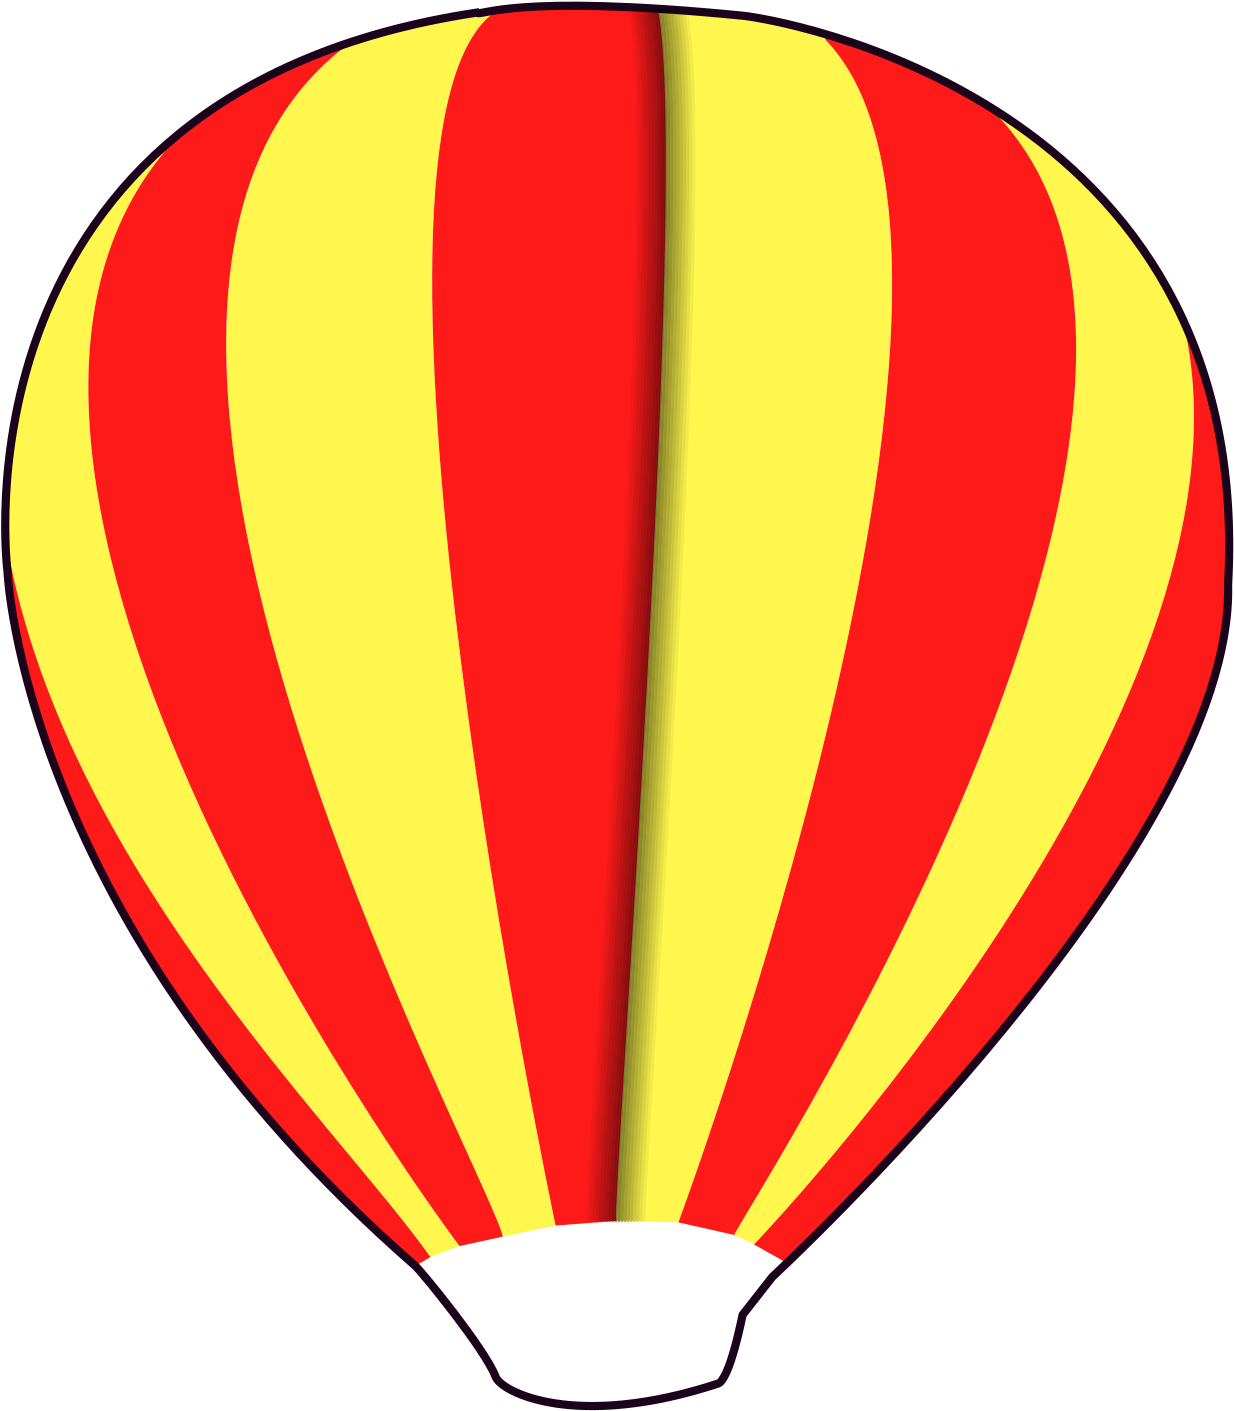 Hot Air Balloon - Hot Air Balloon Clip Art (1570x2400)